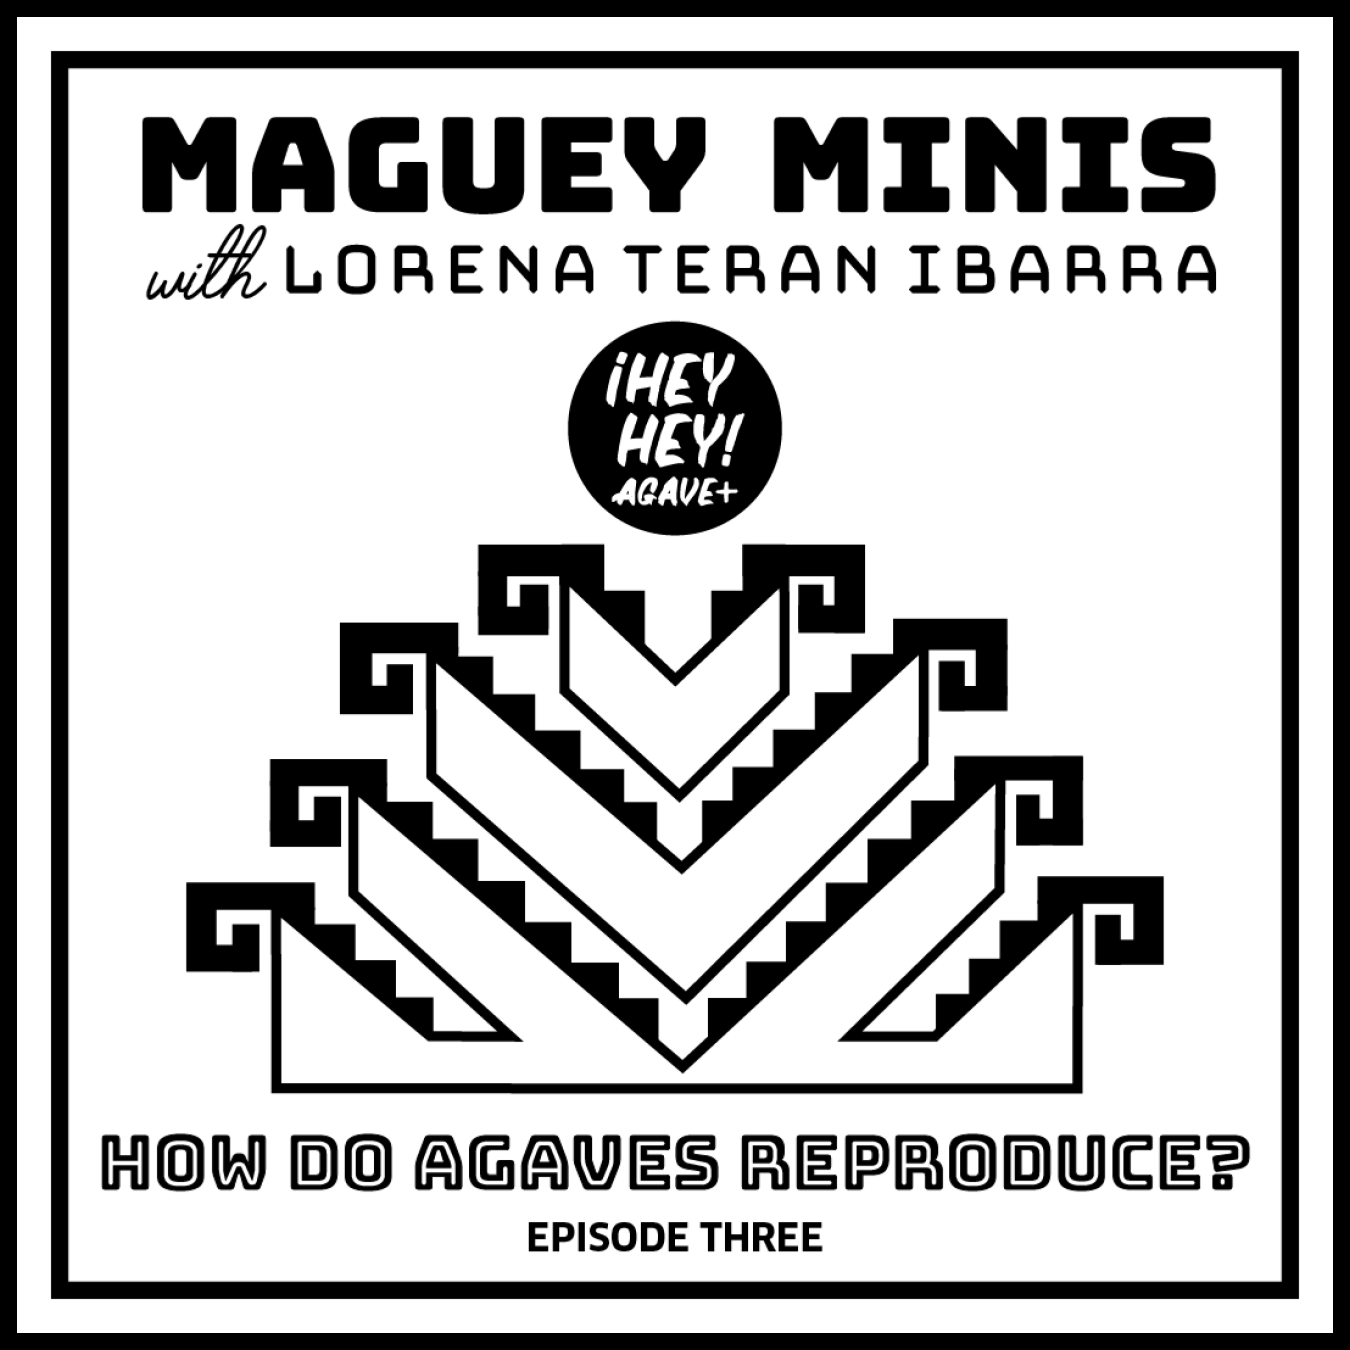 Maguey Minis + Episode Three